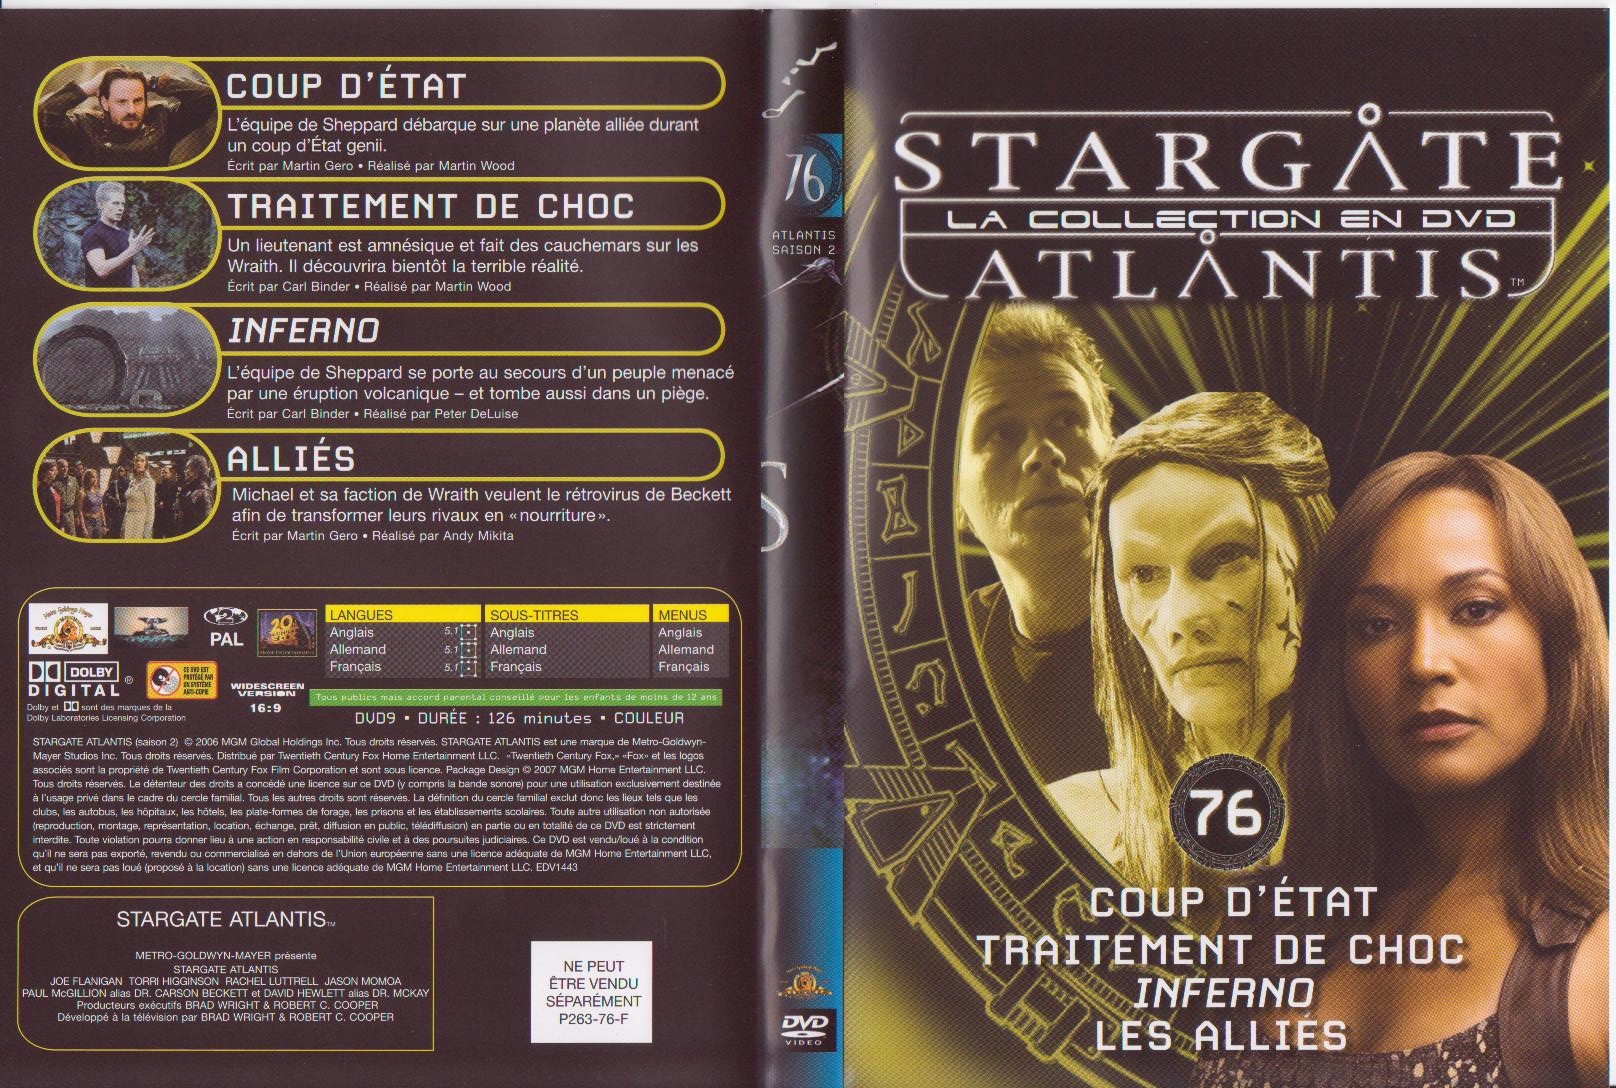 Jaquette DVD Stargate atlantis saison 2 vol 76